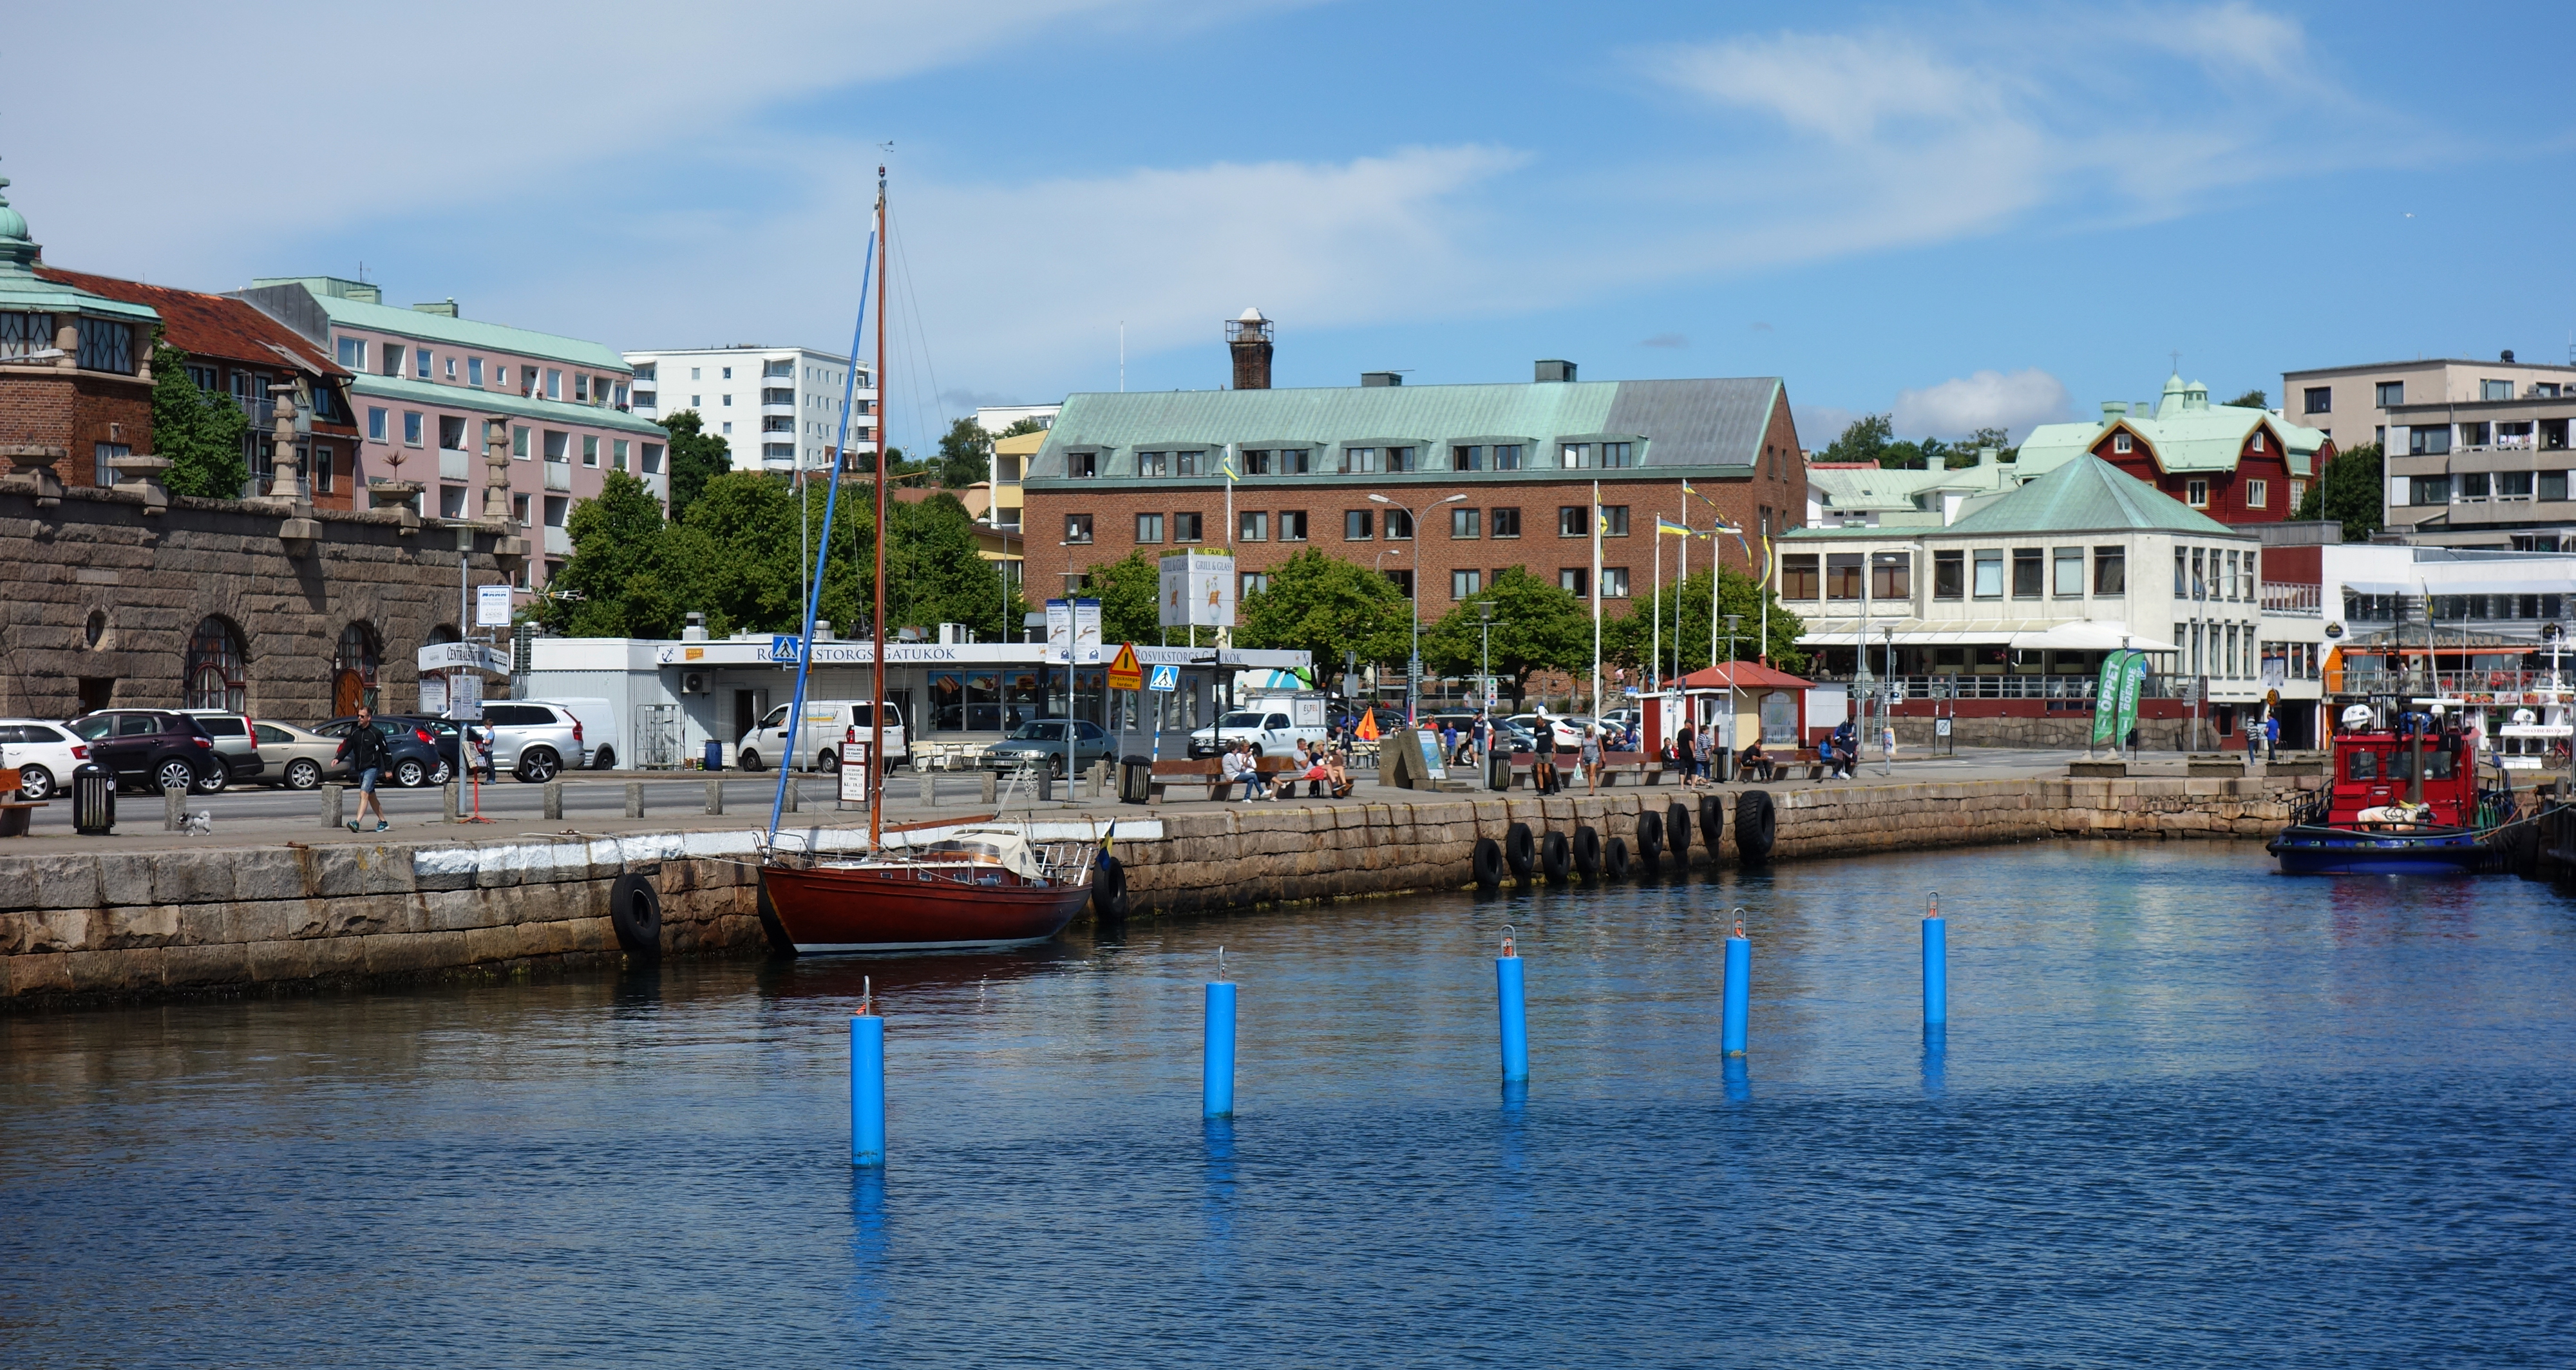 South harbor Lysekil with four blue buoys